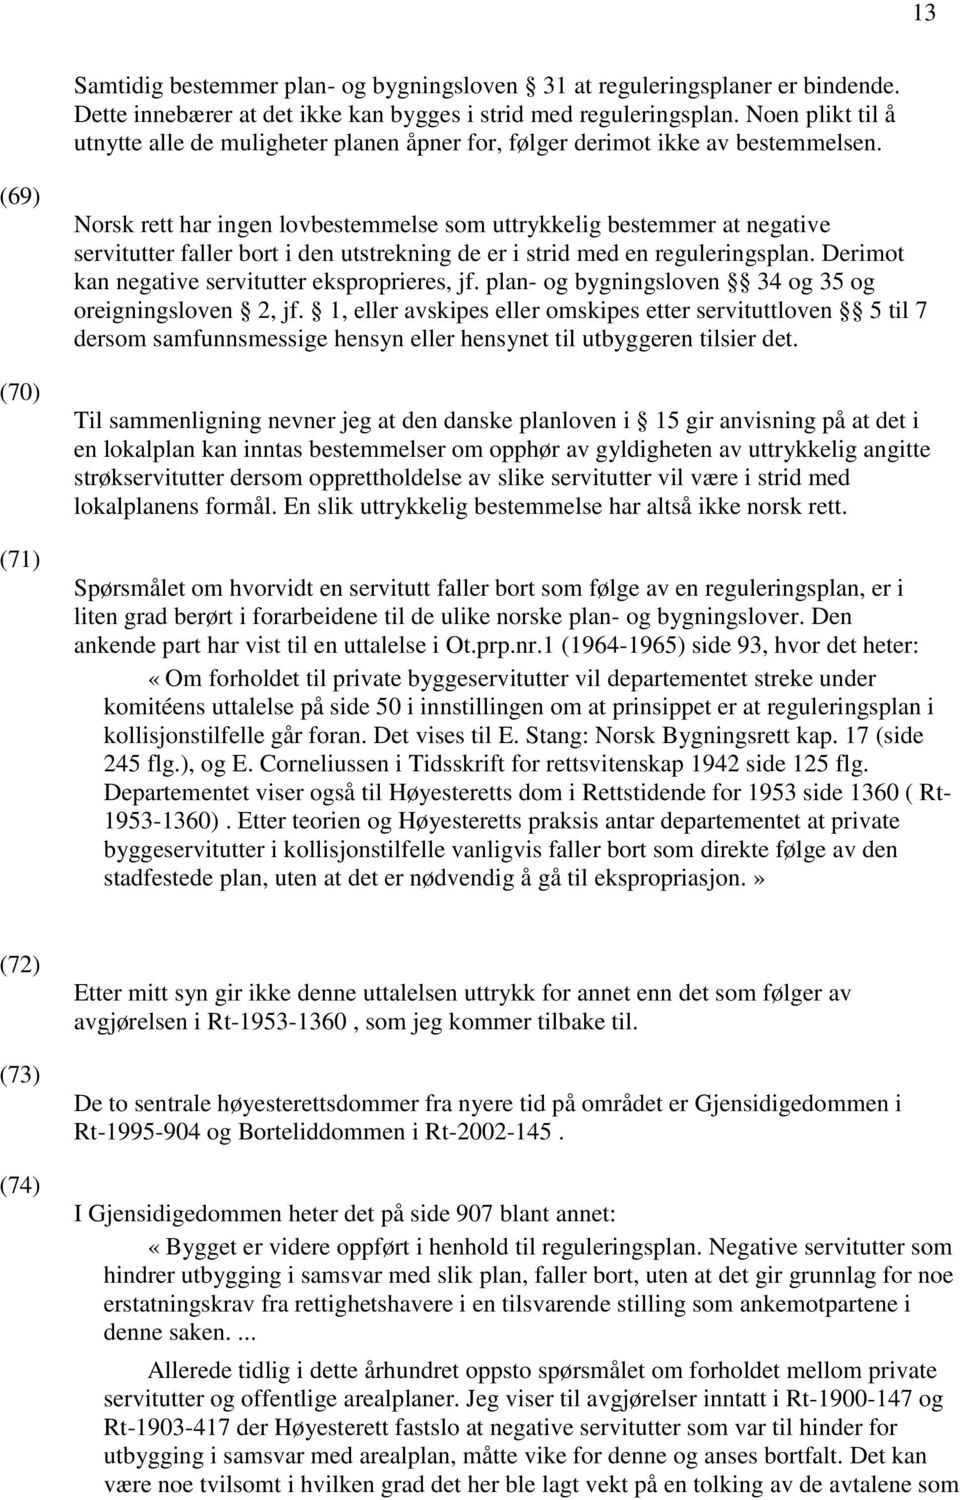 (69) (70) (71) Norsk rett har ingen lovbestemmelse som uttrykkelig bestemmer at negative servitutter faller bort i den utstrekning de er i strid med en reguleringsplan.